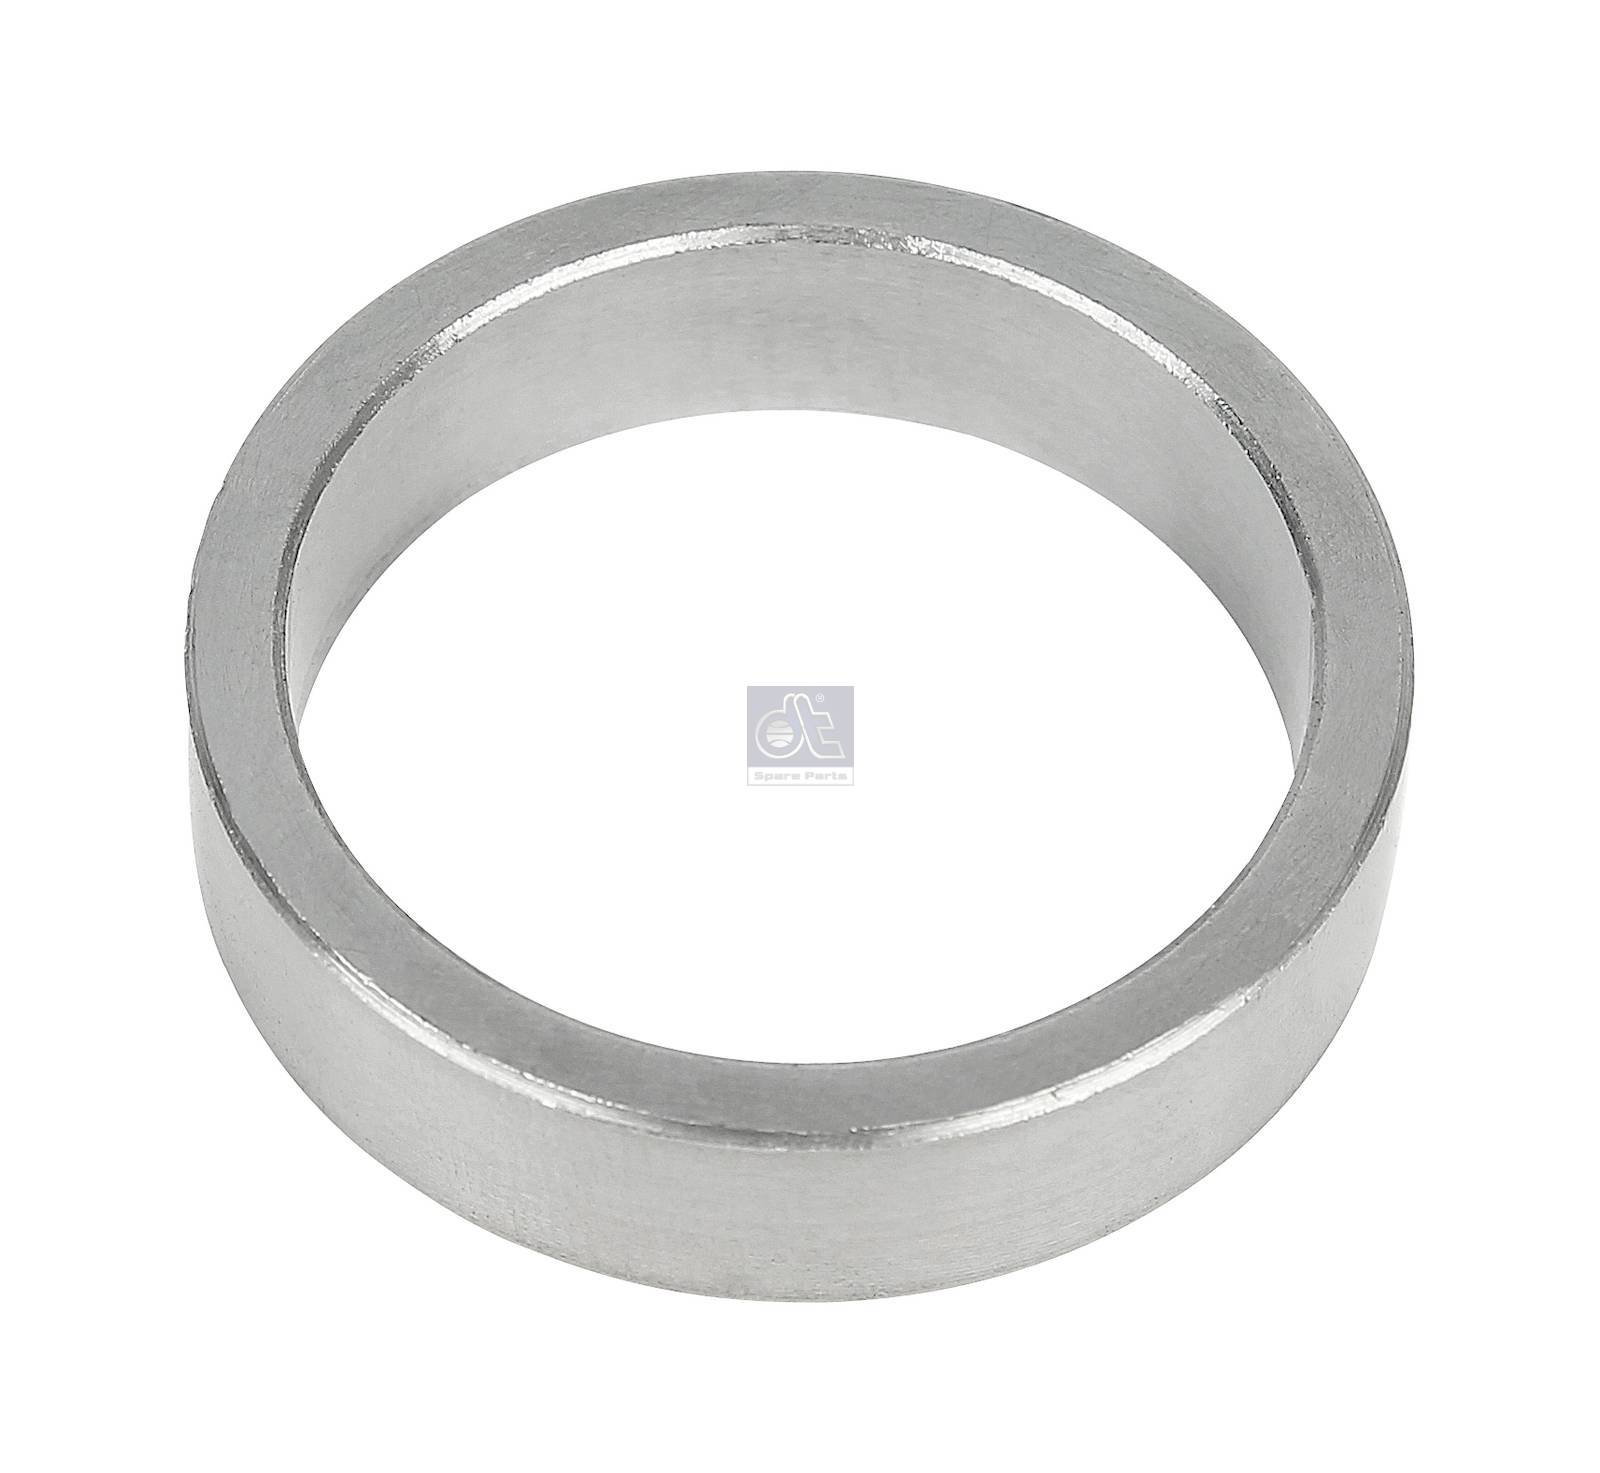 Hoes Waden Zes 1.16420 Spacer ring (D: 42 mm,d: 35 mm,H: 10 mm)